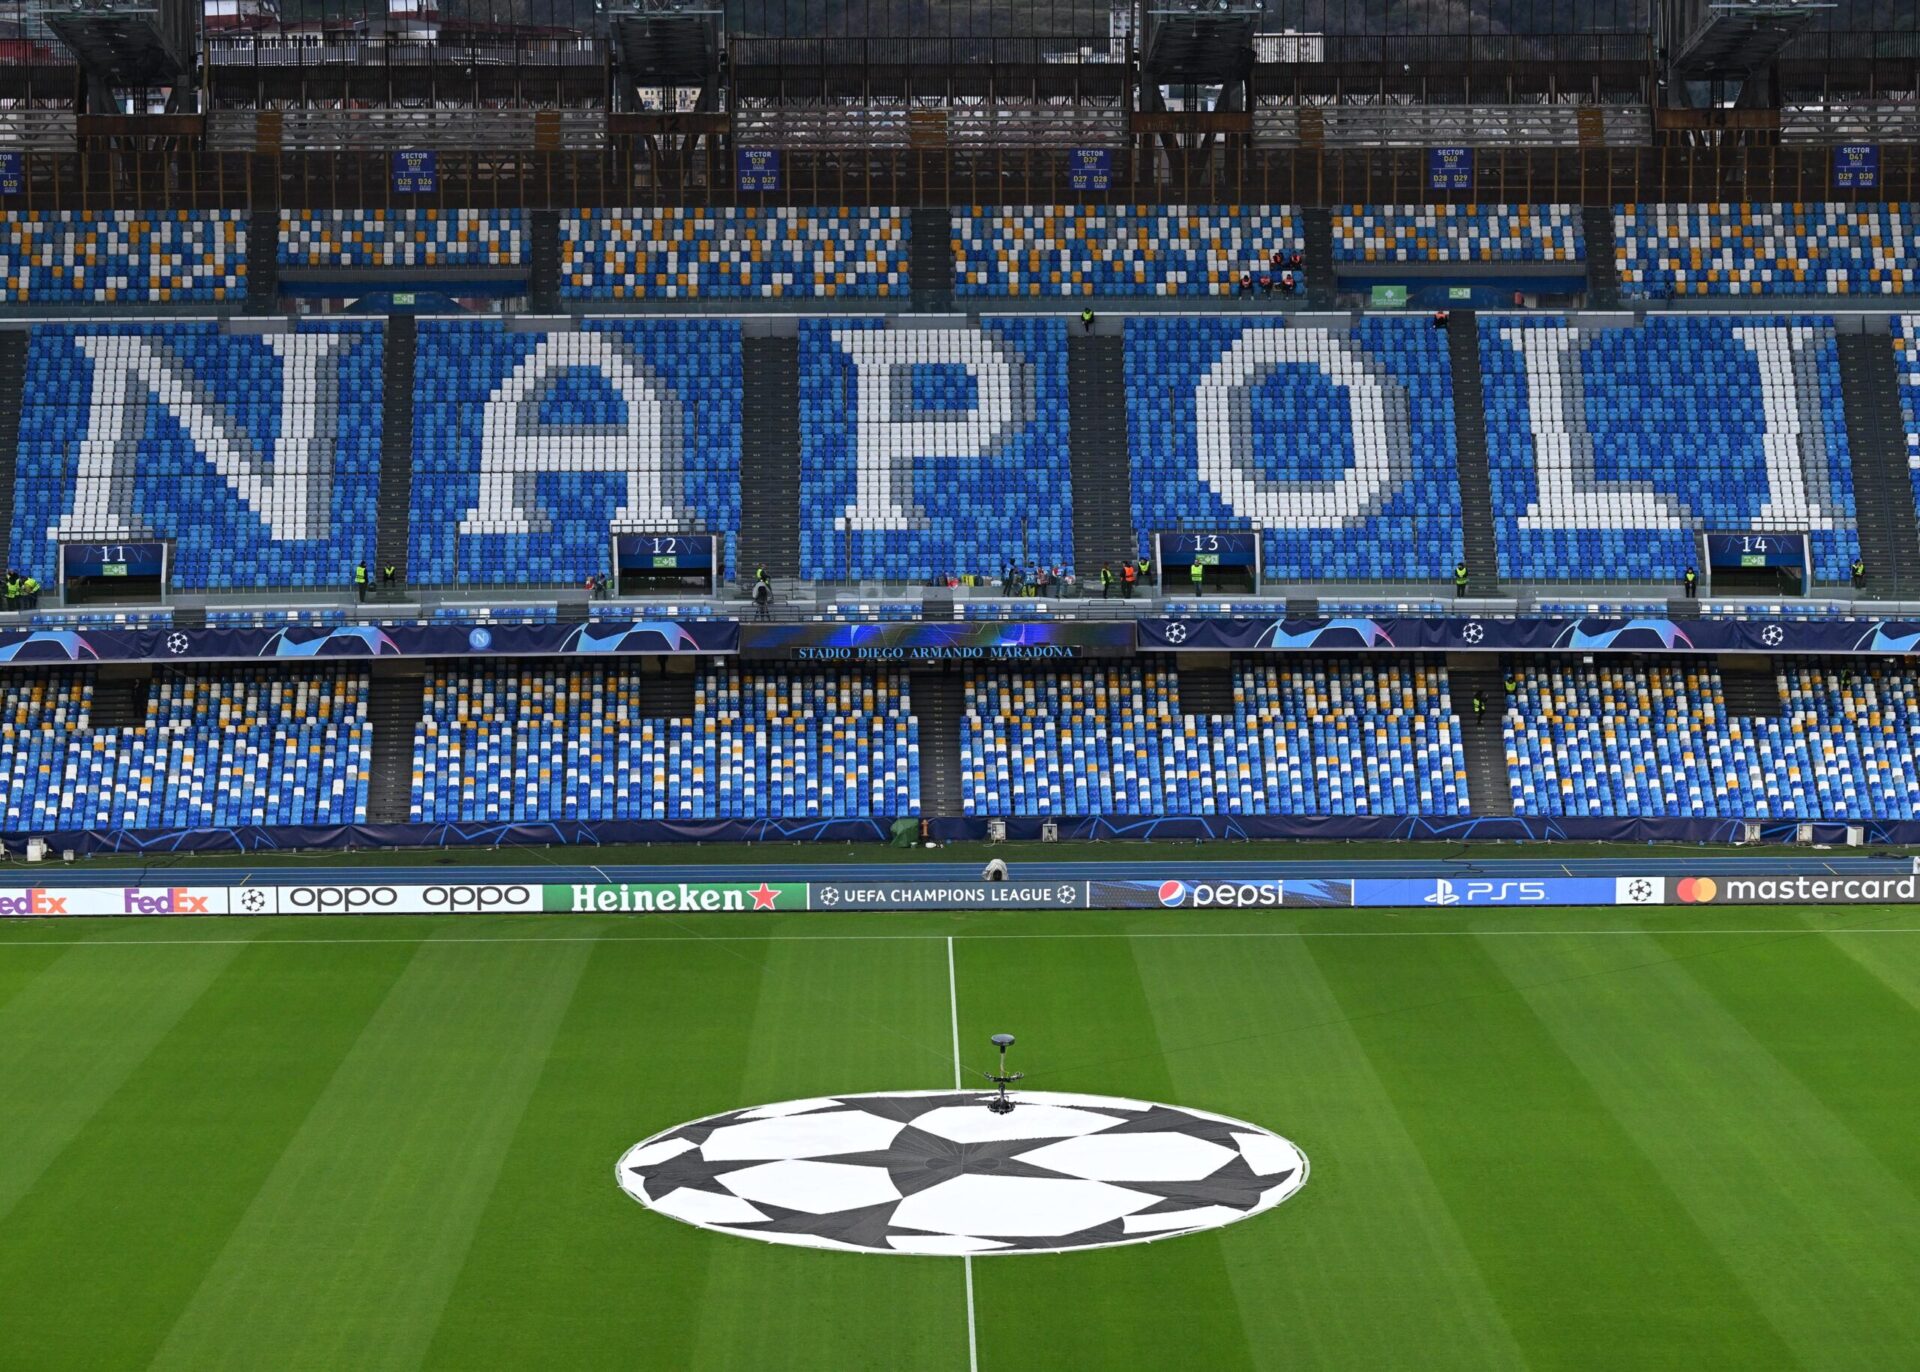 Società Sportiva Calcio Napoli-Union Berlin, i prezzi dei biglietti